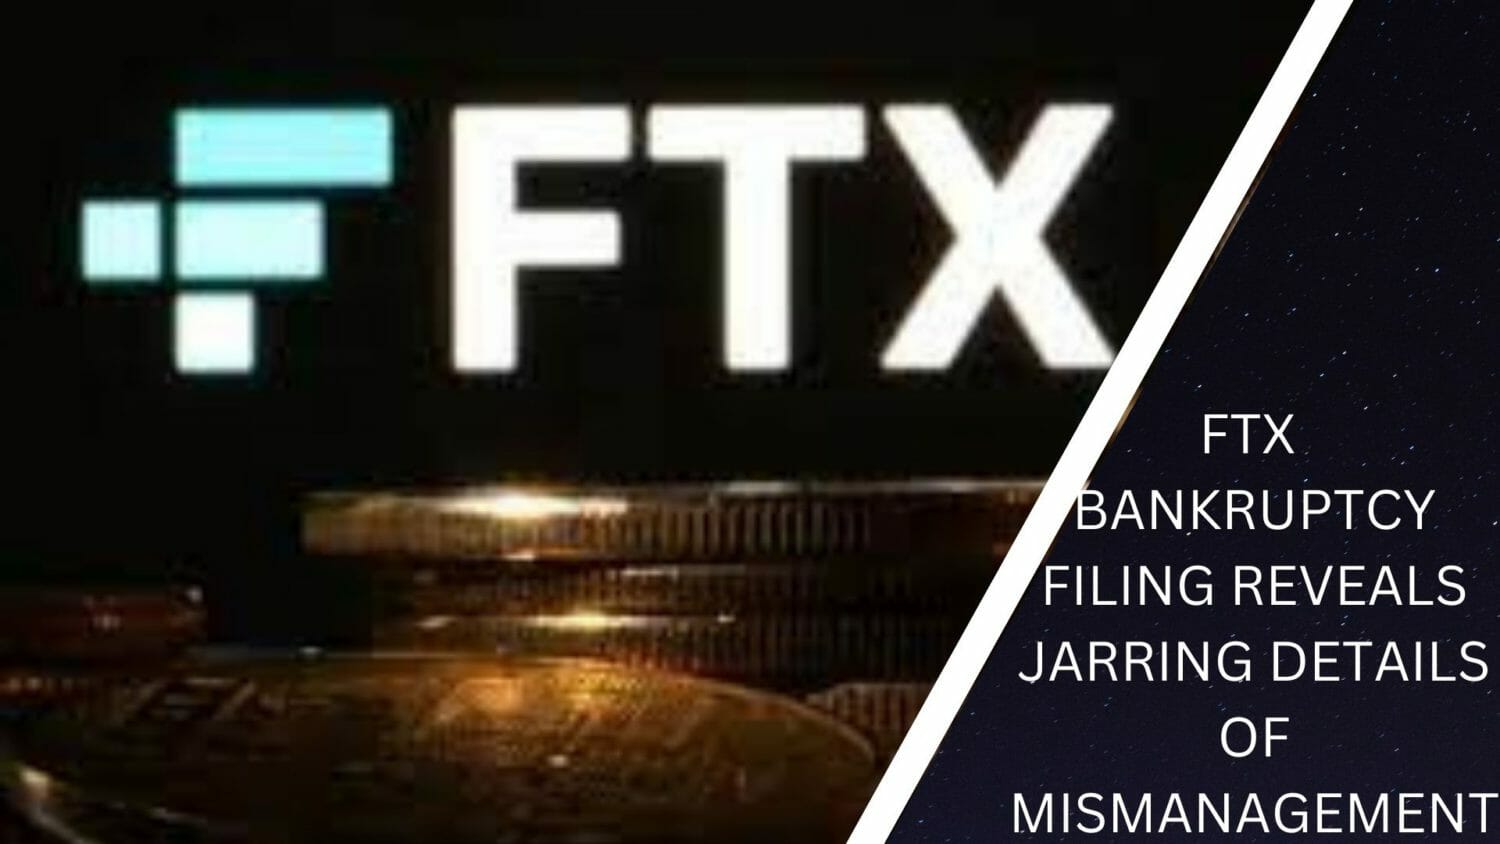 Ftx Bankruptcy Filing Reveals Jarring Details Of Mismanagement